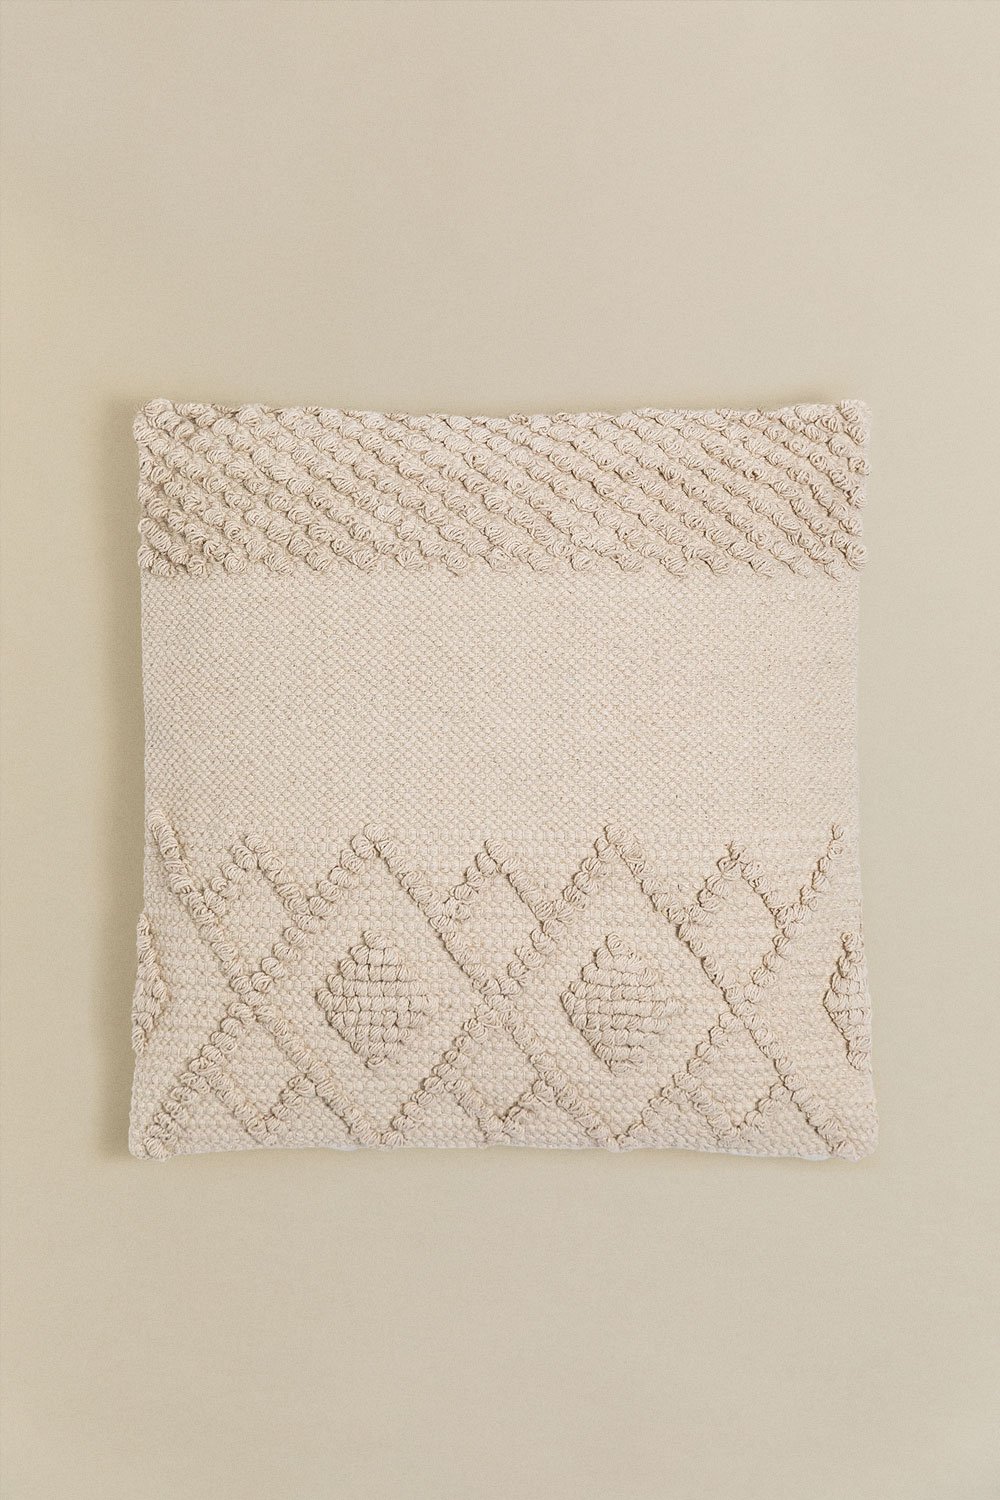 Coussin carré en coton (50x50cm) Gubby, image de la galerie 1